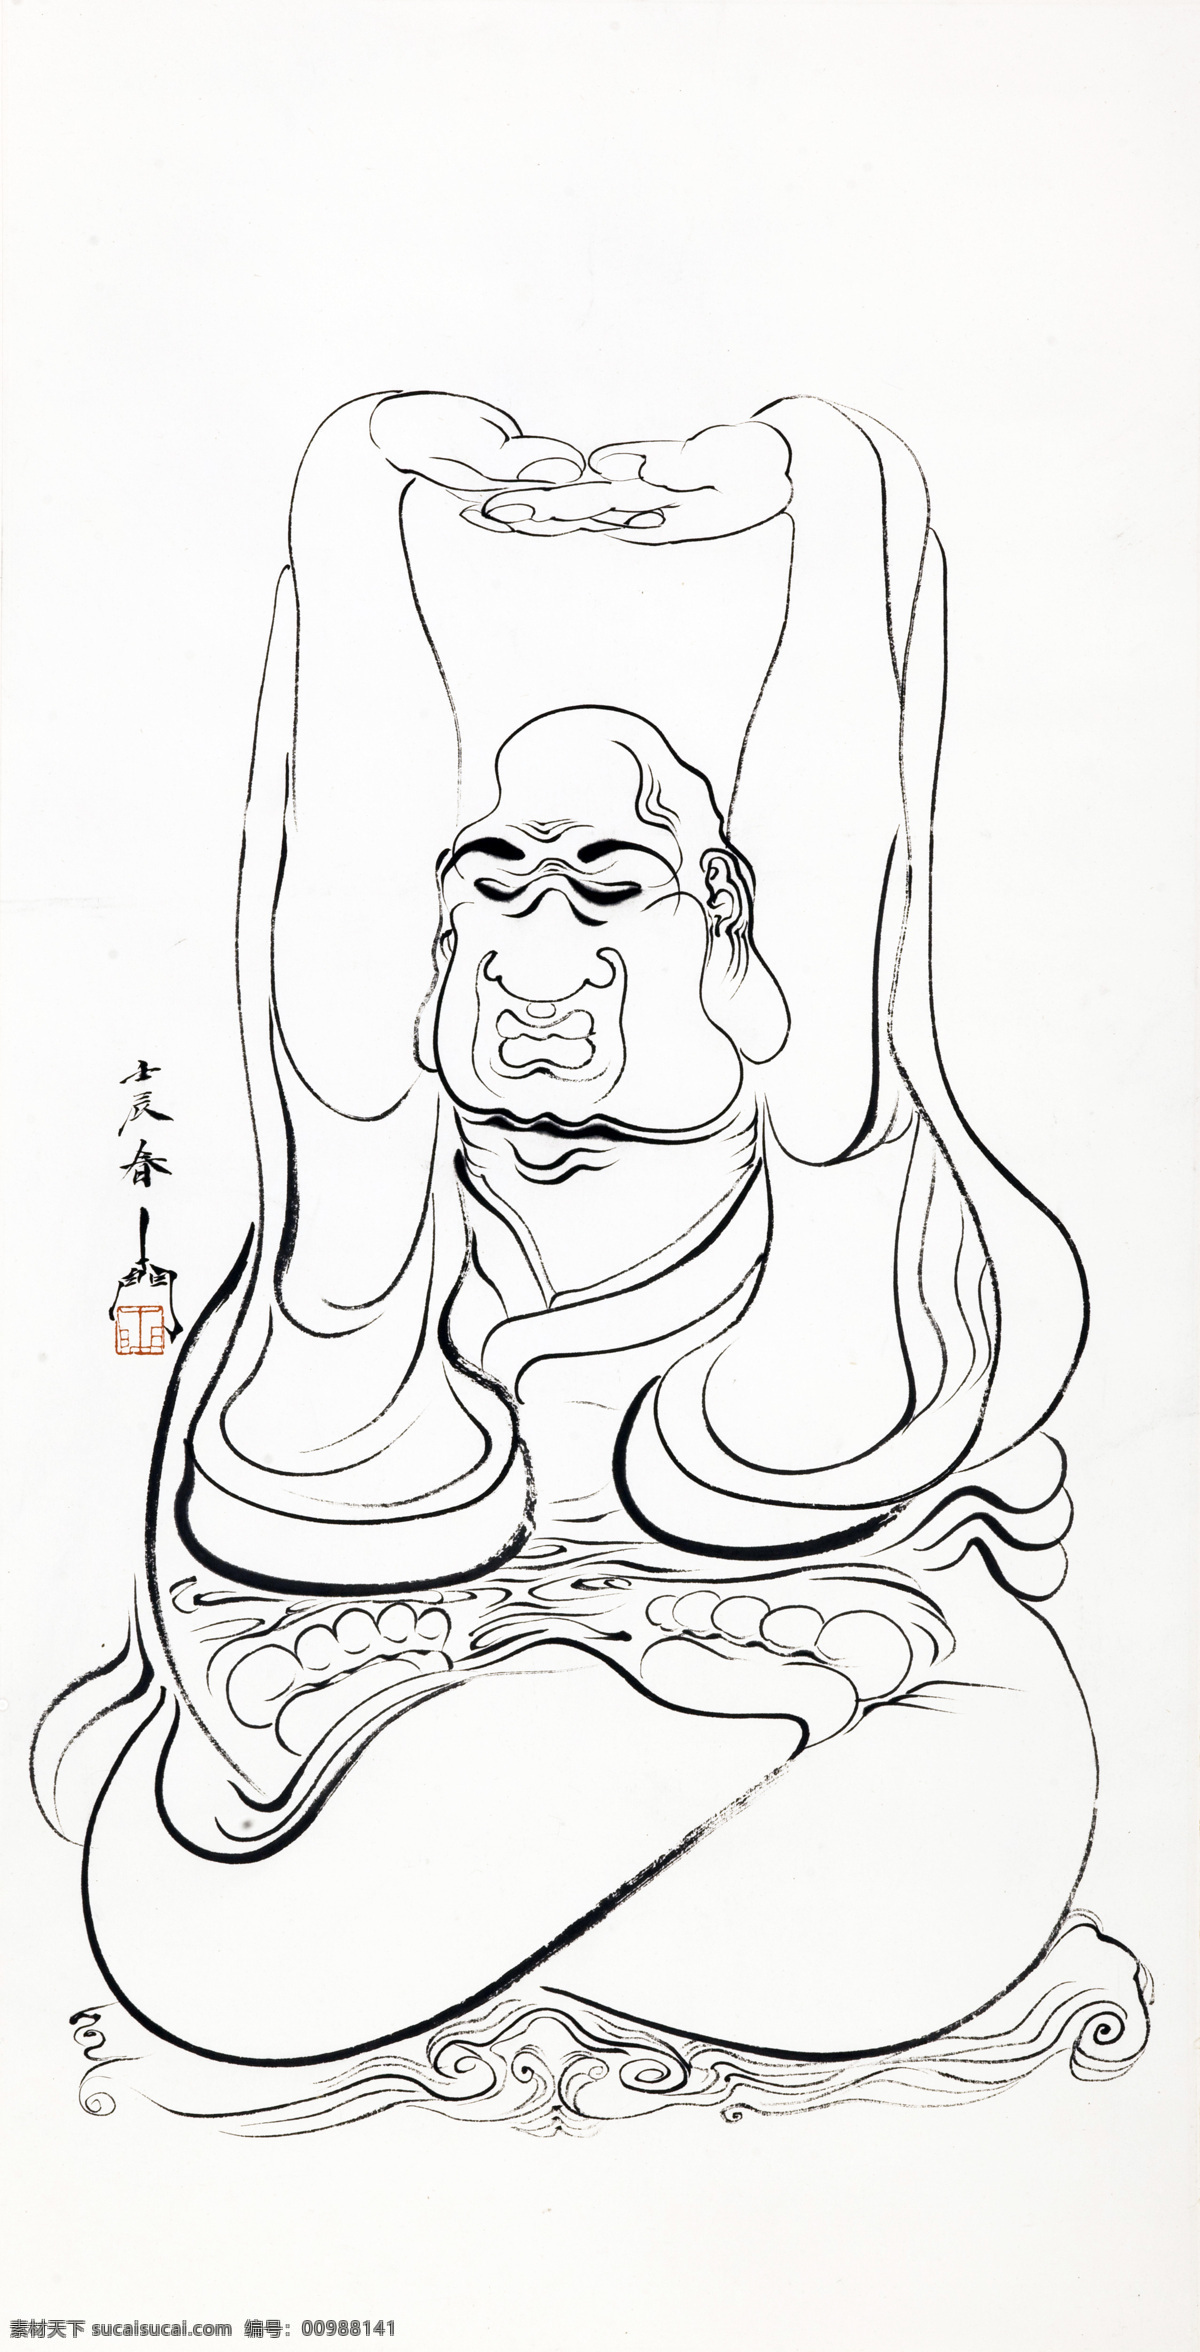 十八阿罗汉 探手 国画 线描 白描 罗汉 佛教人物 佛教文化 孙进国画 绘画书法 文化艺术